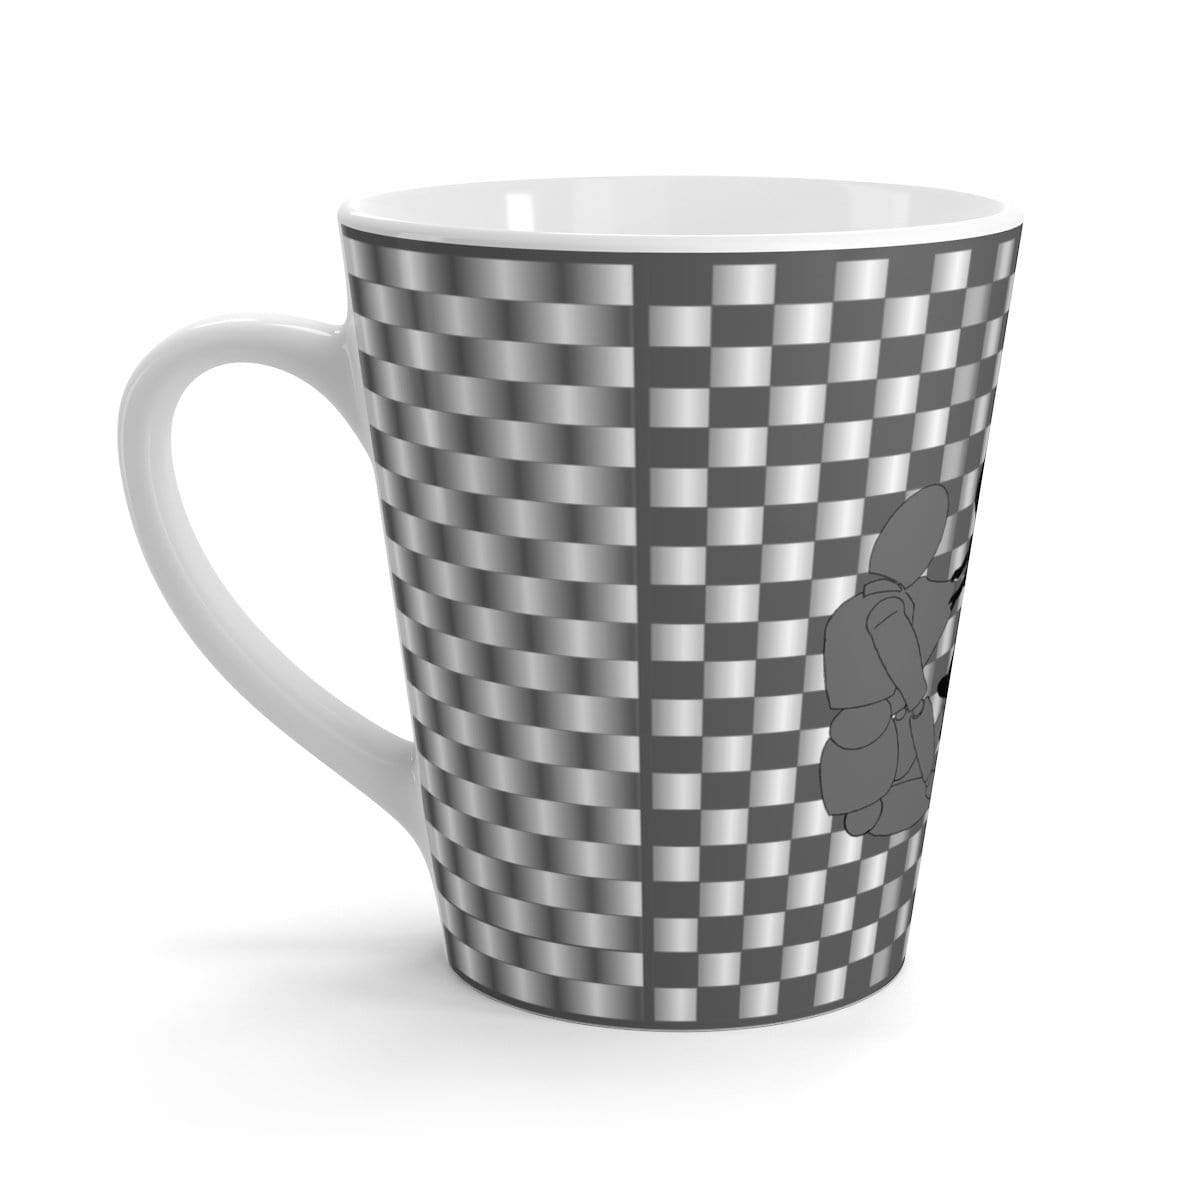 Coffee Aesthetic Coffee Co. Mug 12oz Coffee-Aesthetic.com - Big Grey/White Grid Latte mug